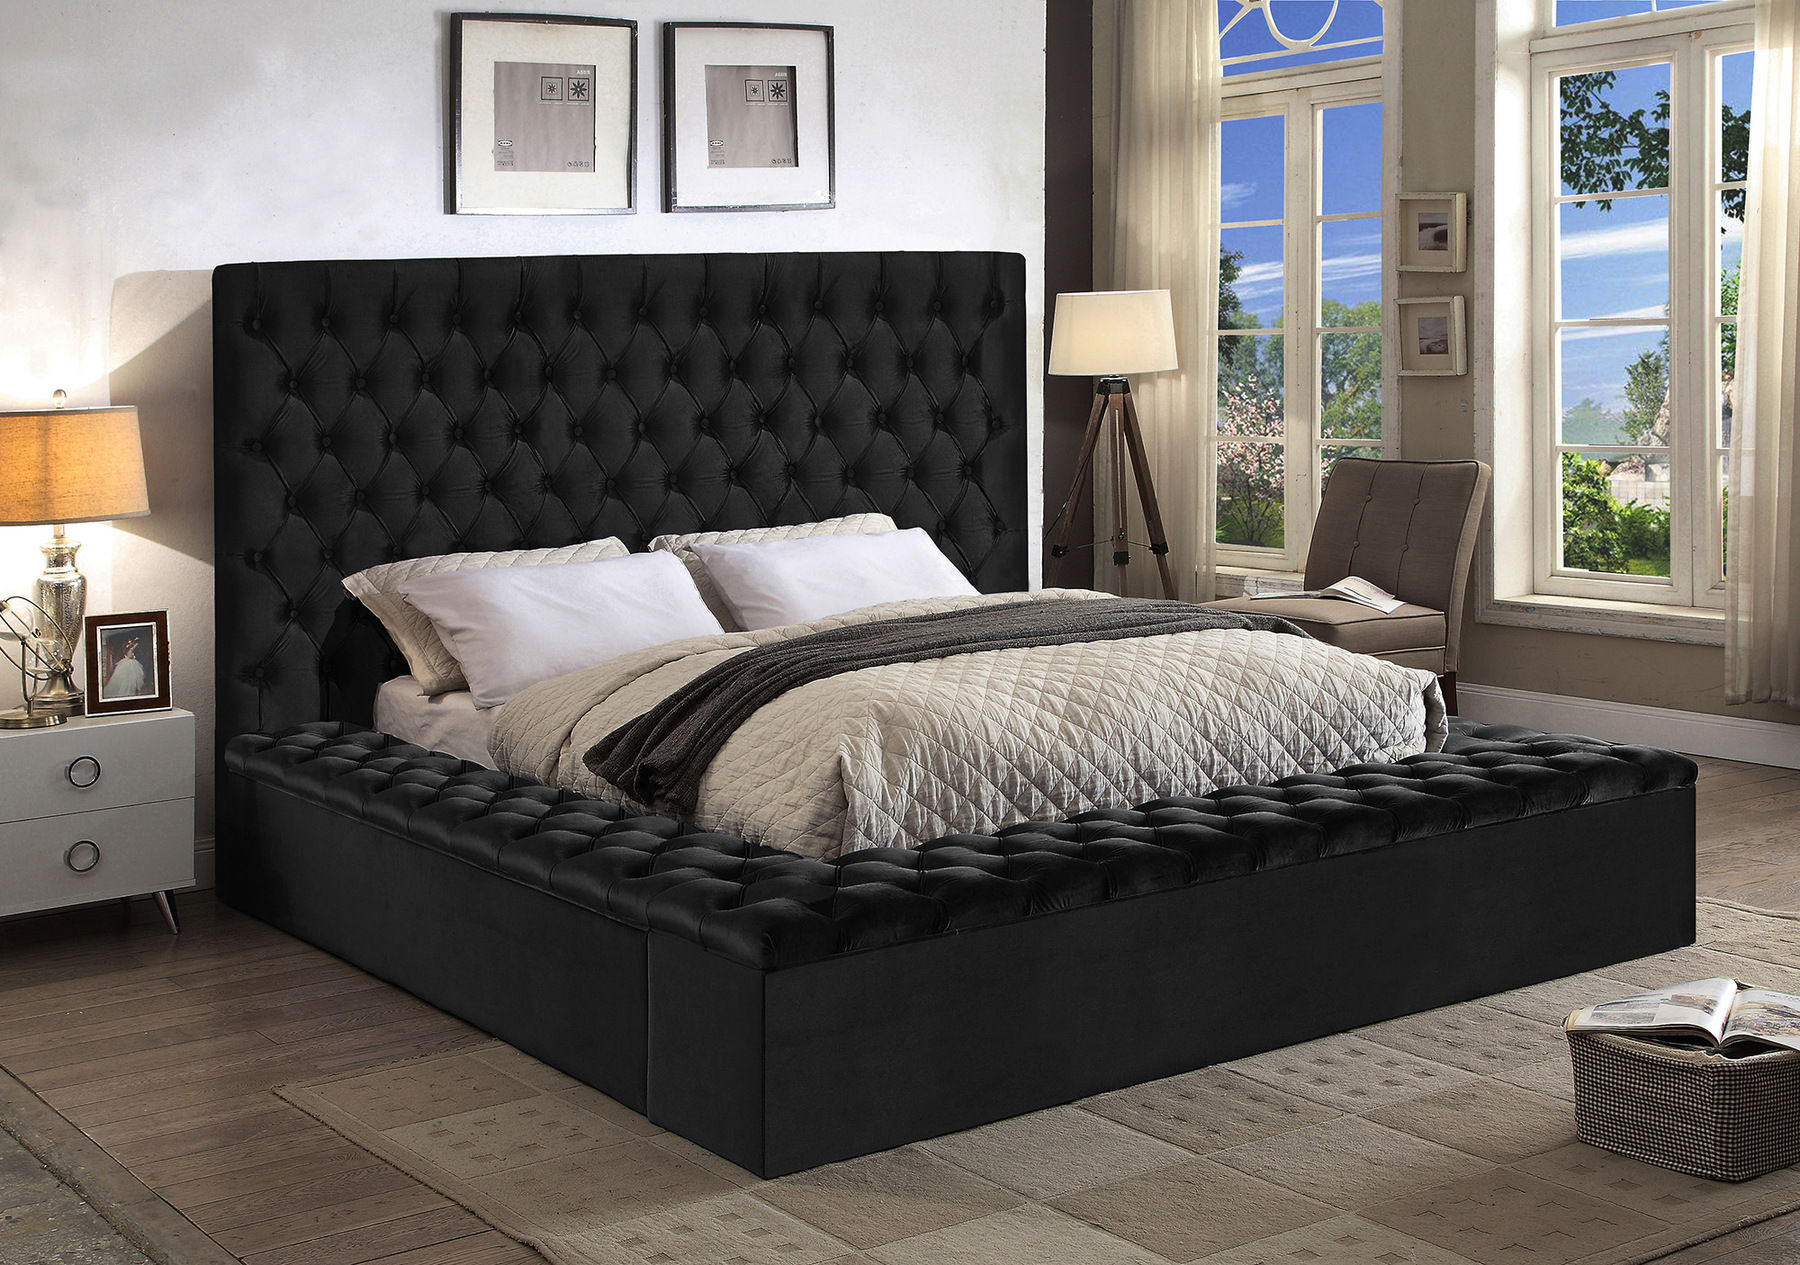 Black King Size Bed Frame White Full Size Bed Frame